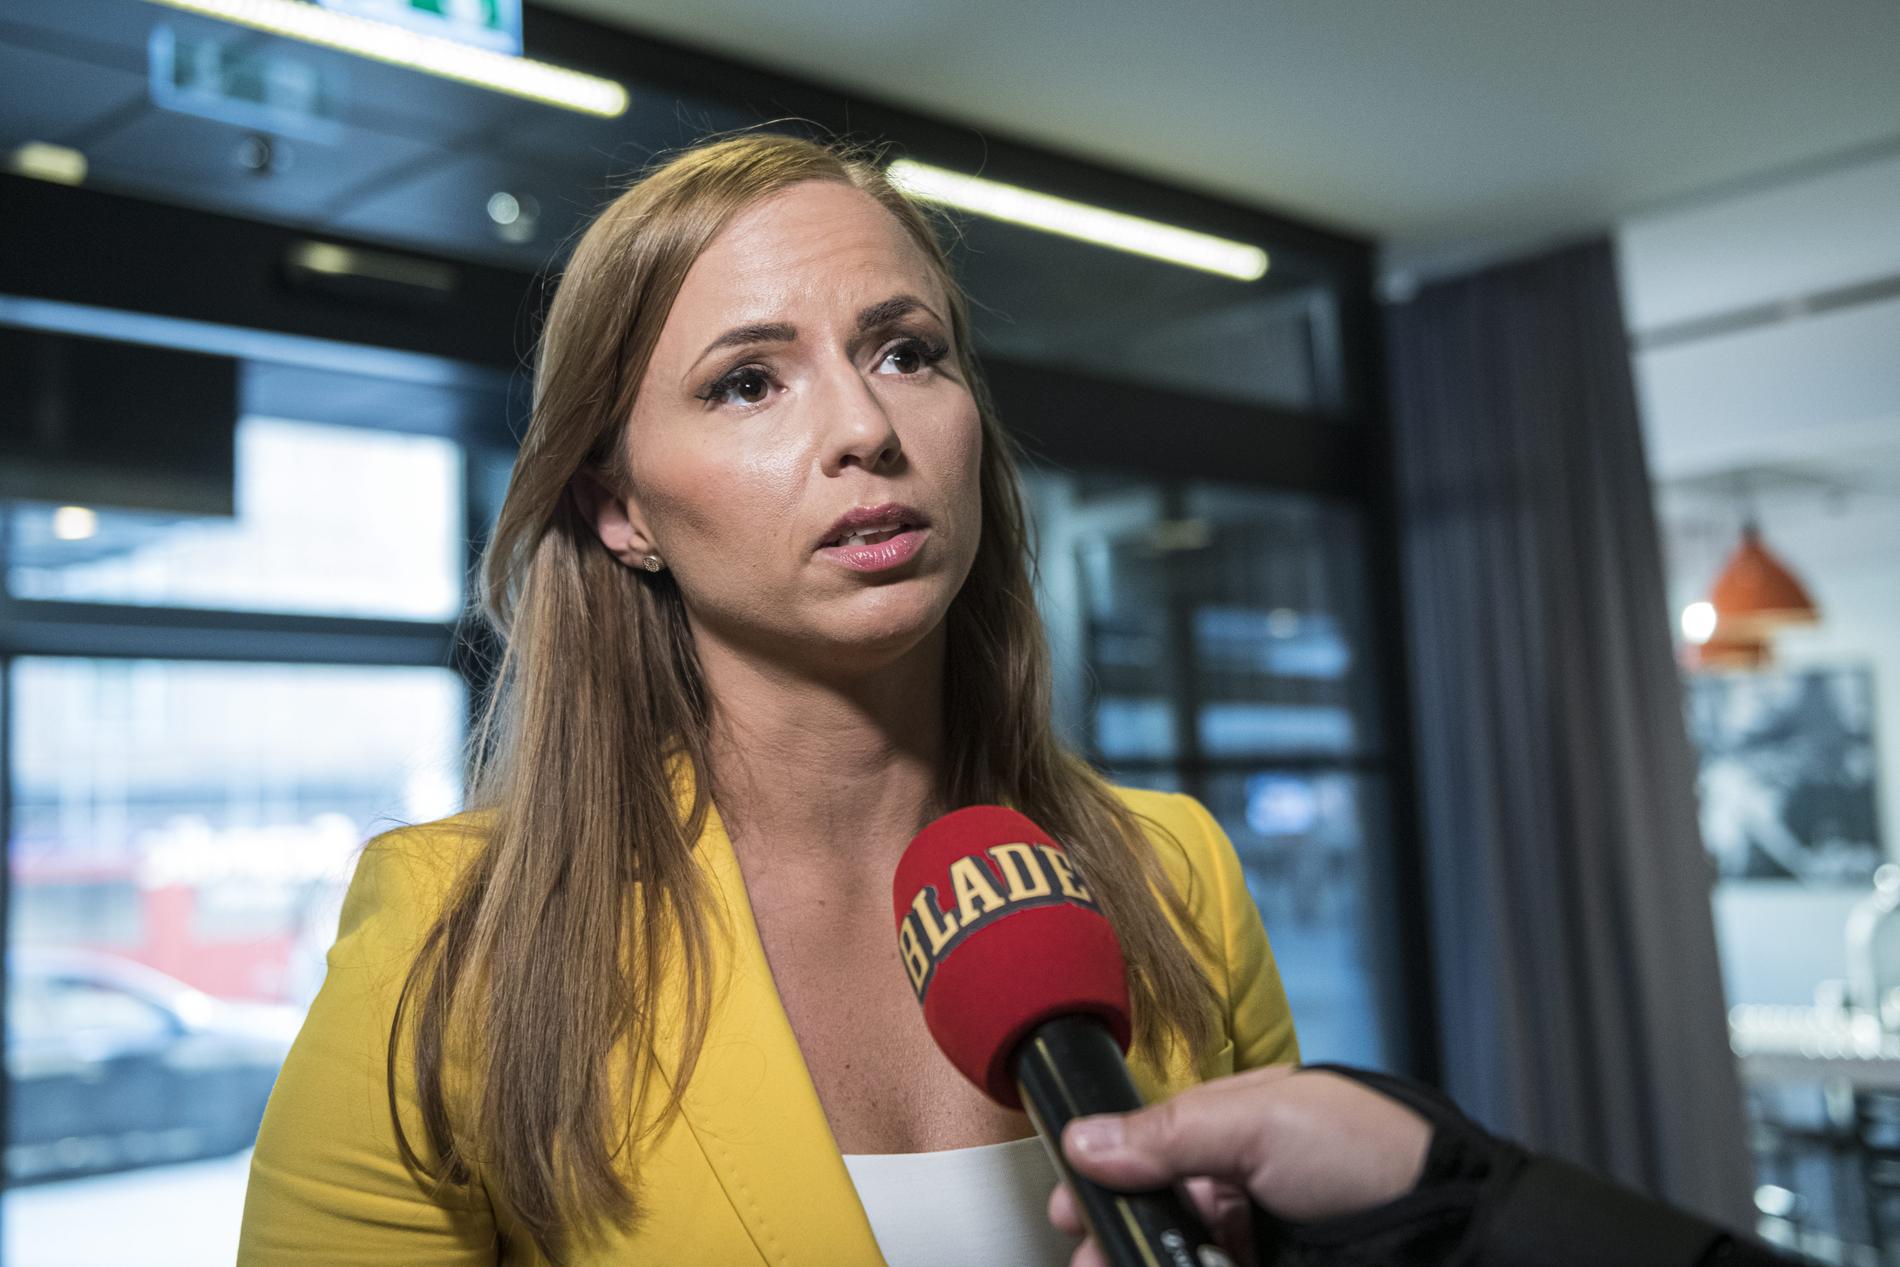 Europaparlamentariker Sara Skyttedal (KD) har polisanmält Johan Ingerö, som nu avgått från posten som partisekreterare.